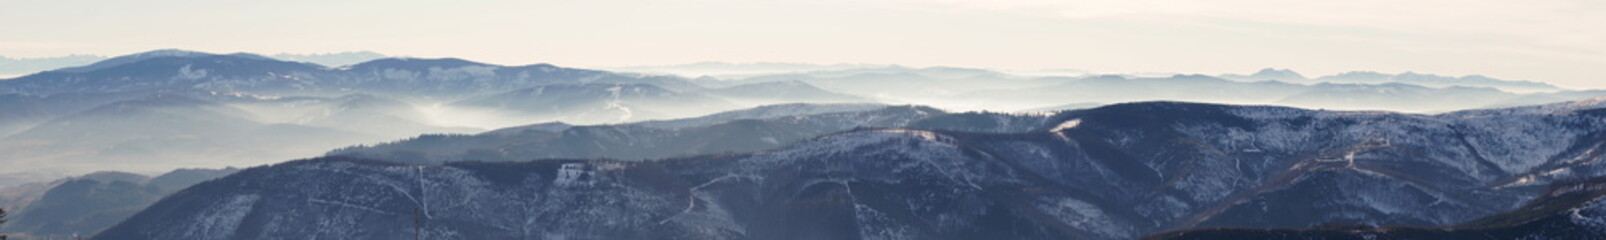 Panorama Beskid slaski . Mountain view from Skrzyczne peak in Szczyrk, Silesian region, Poland on a...